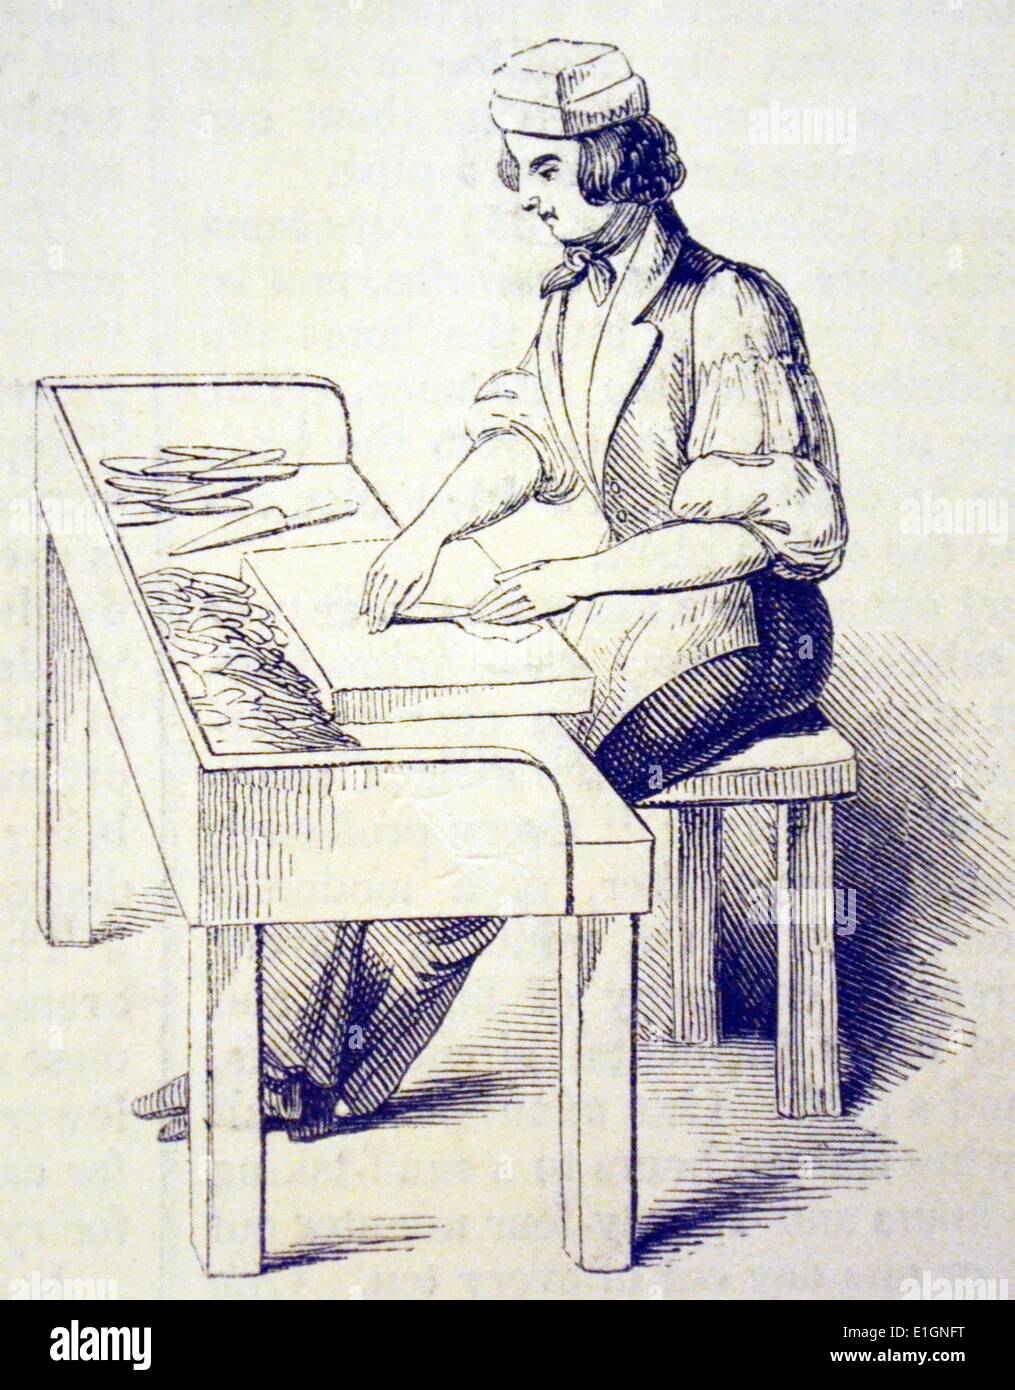 Rolling Zigarren in einem Londoner Tabakfabrik. Die sehr hohe Rate des Zolls bei der Einfuhr von Zigarren bedeutete, dass mehr und mehr in Großbritannien gemacht wurden. Holzstich, London, 1841. Stockfoto